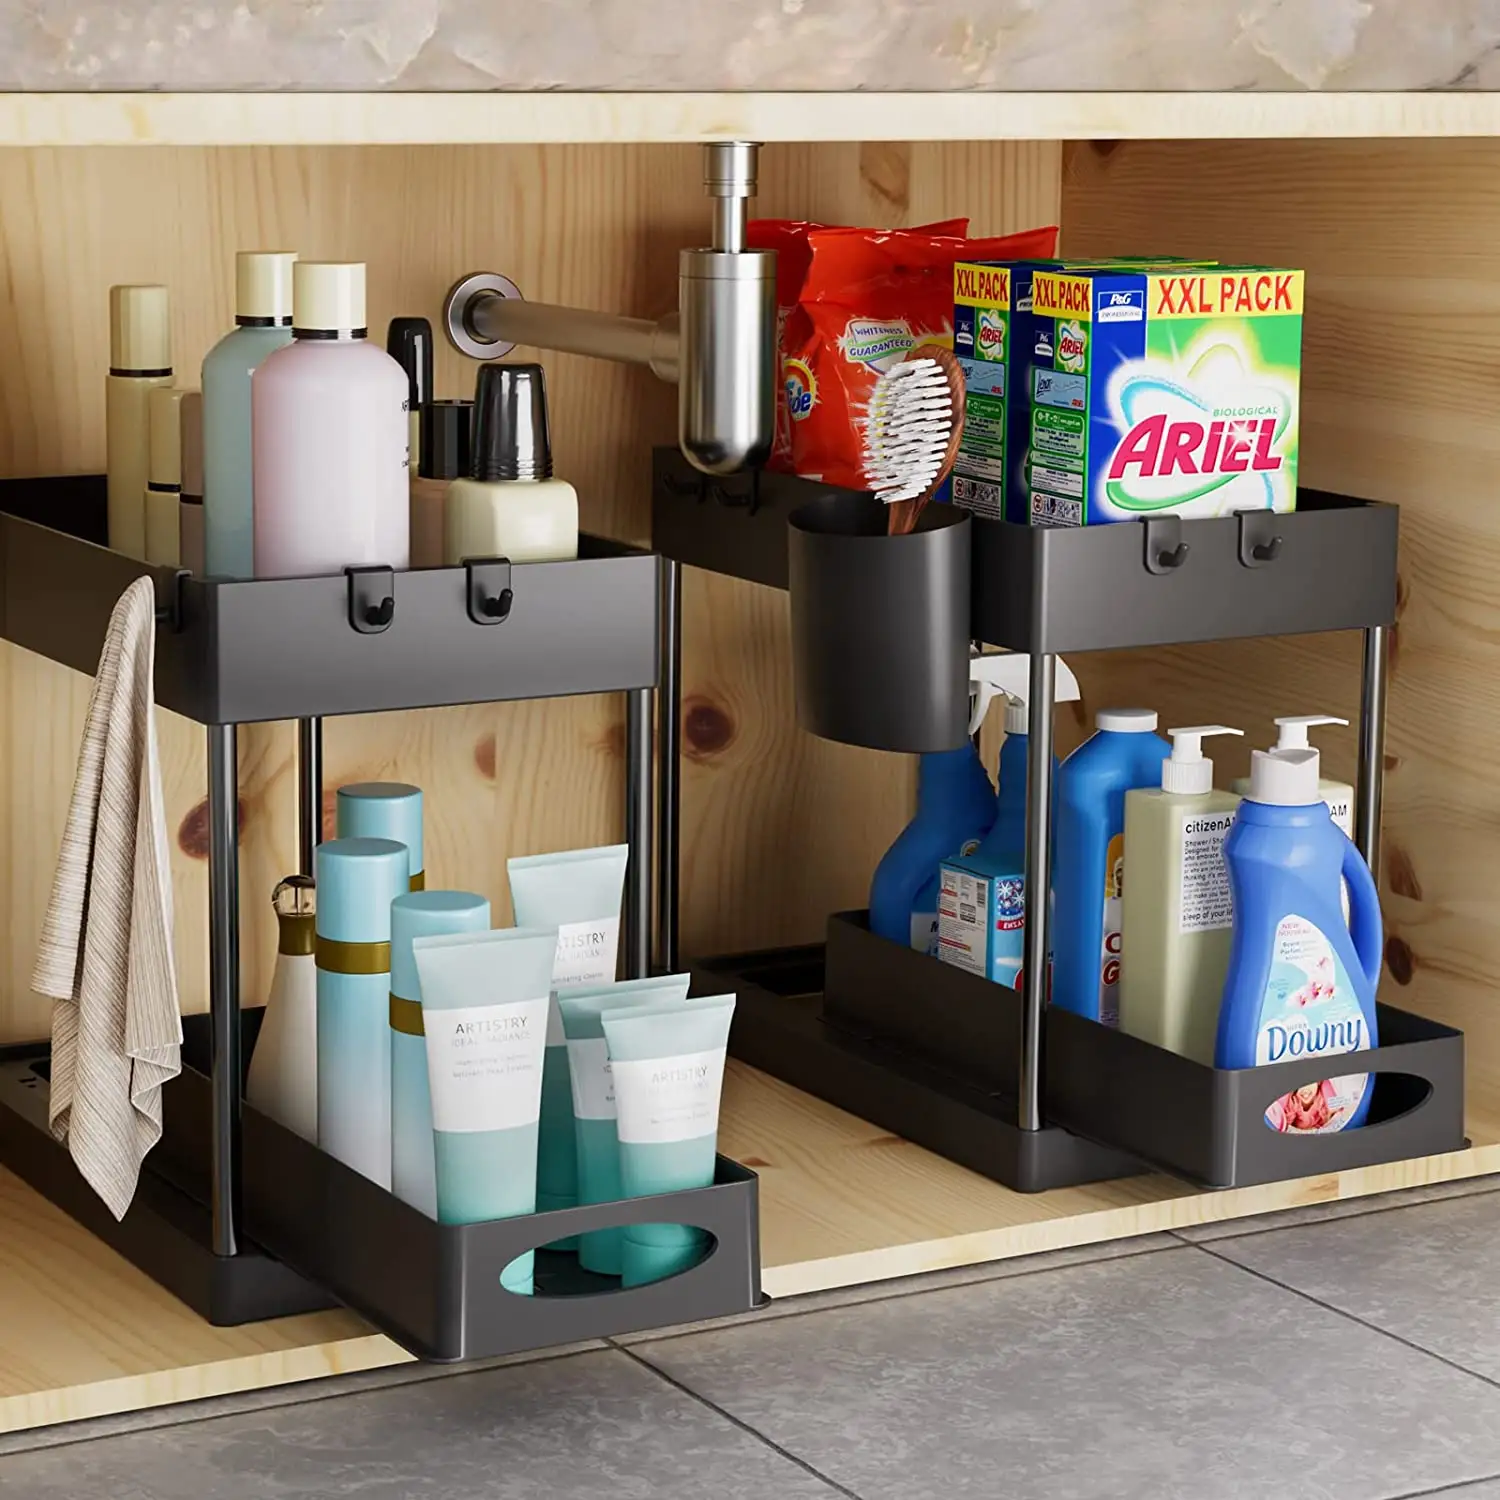 Quality Plastic Household Bathroom & Kitchen Storage Racks Under The Sink Organizer Cabinet Drawer Organizer